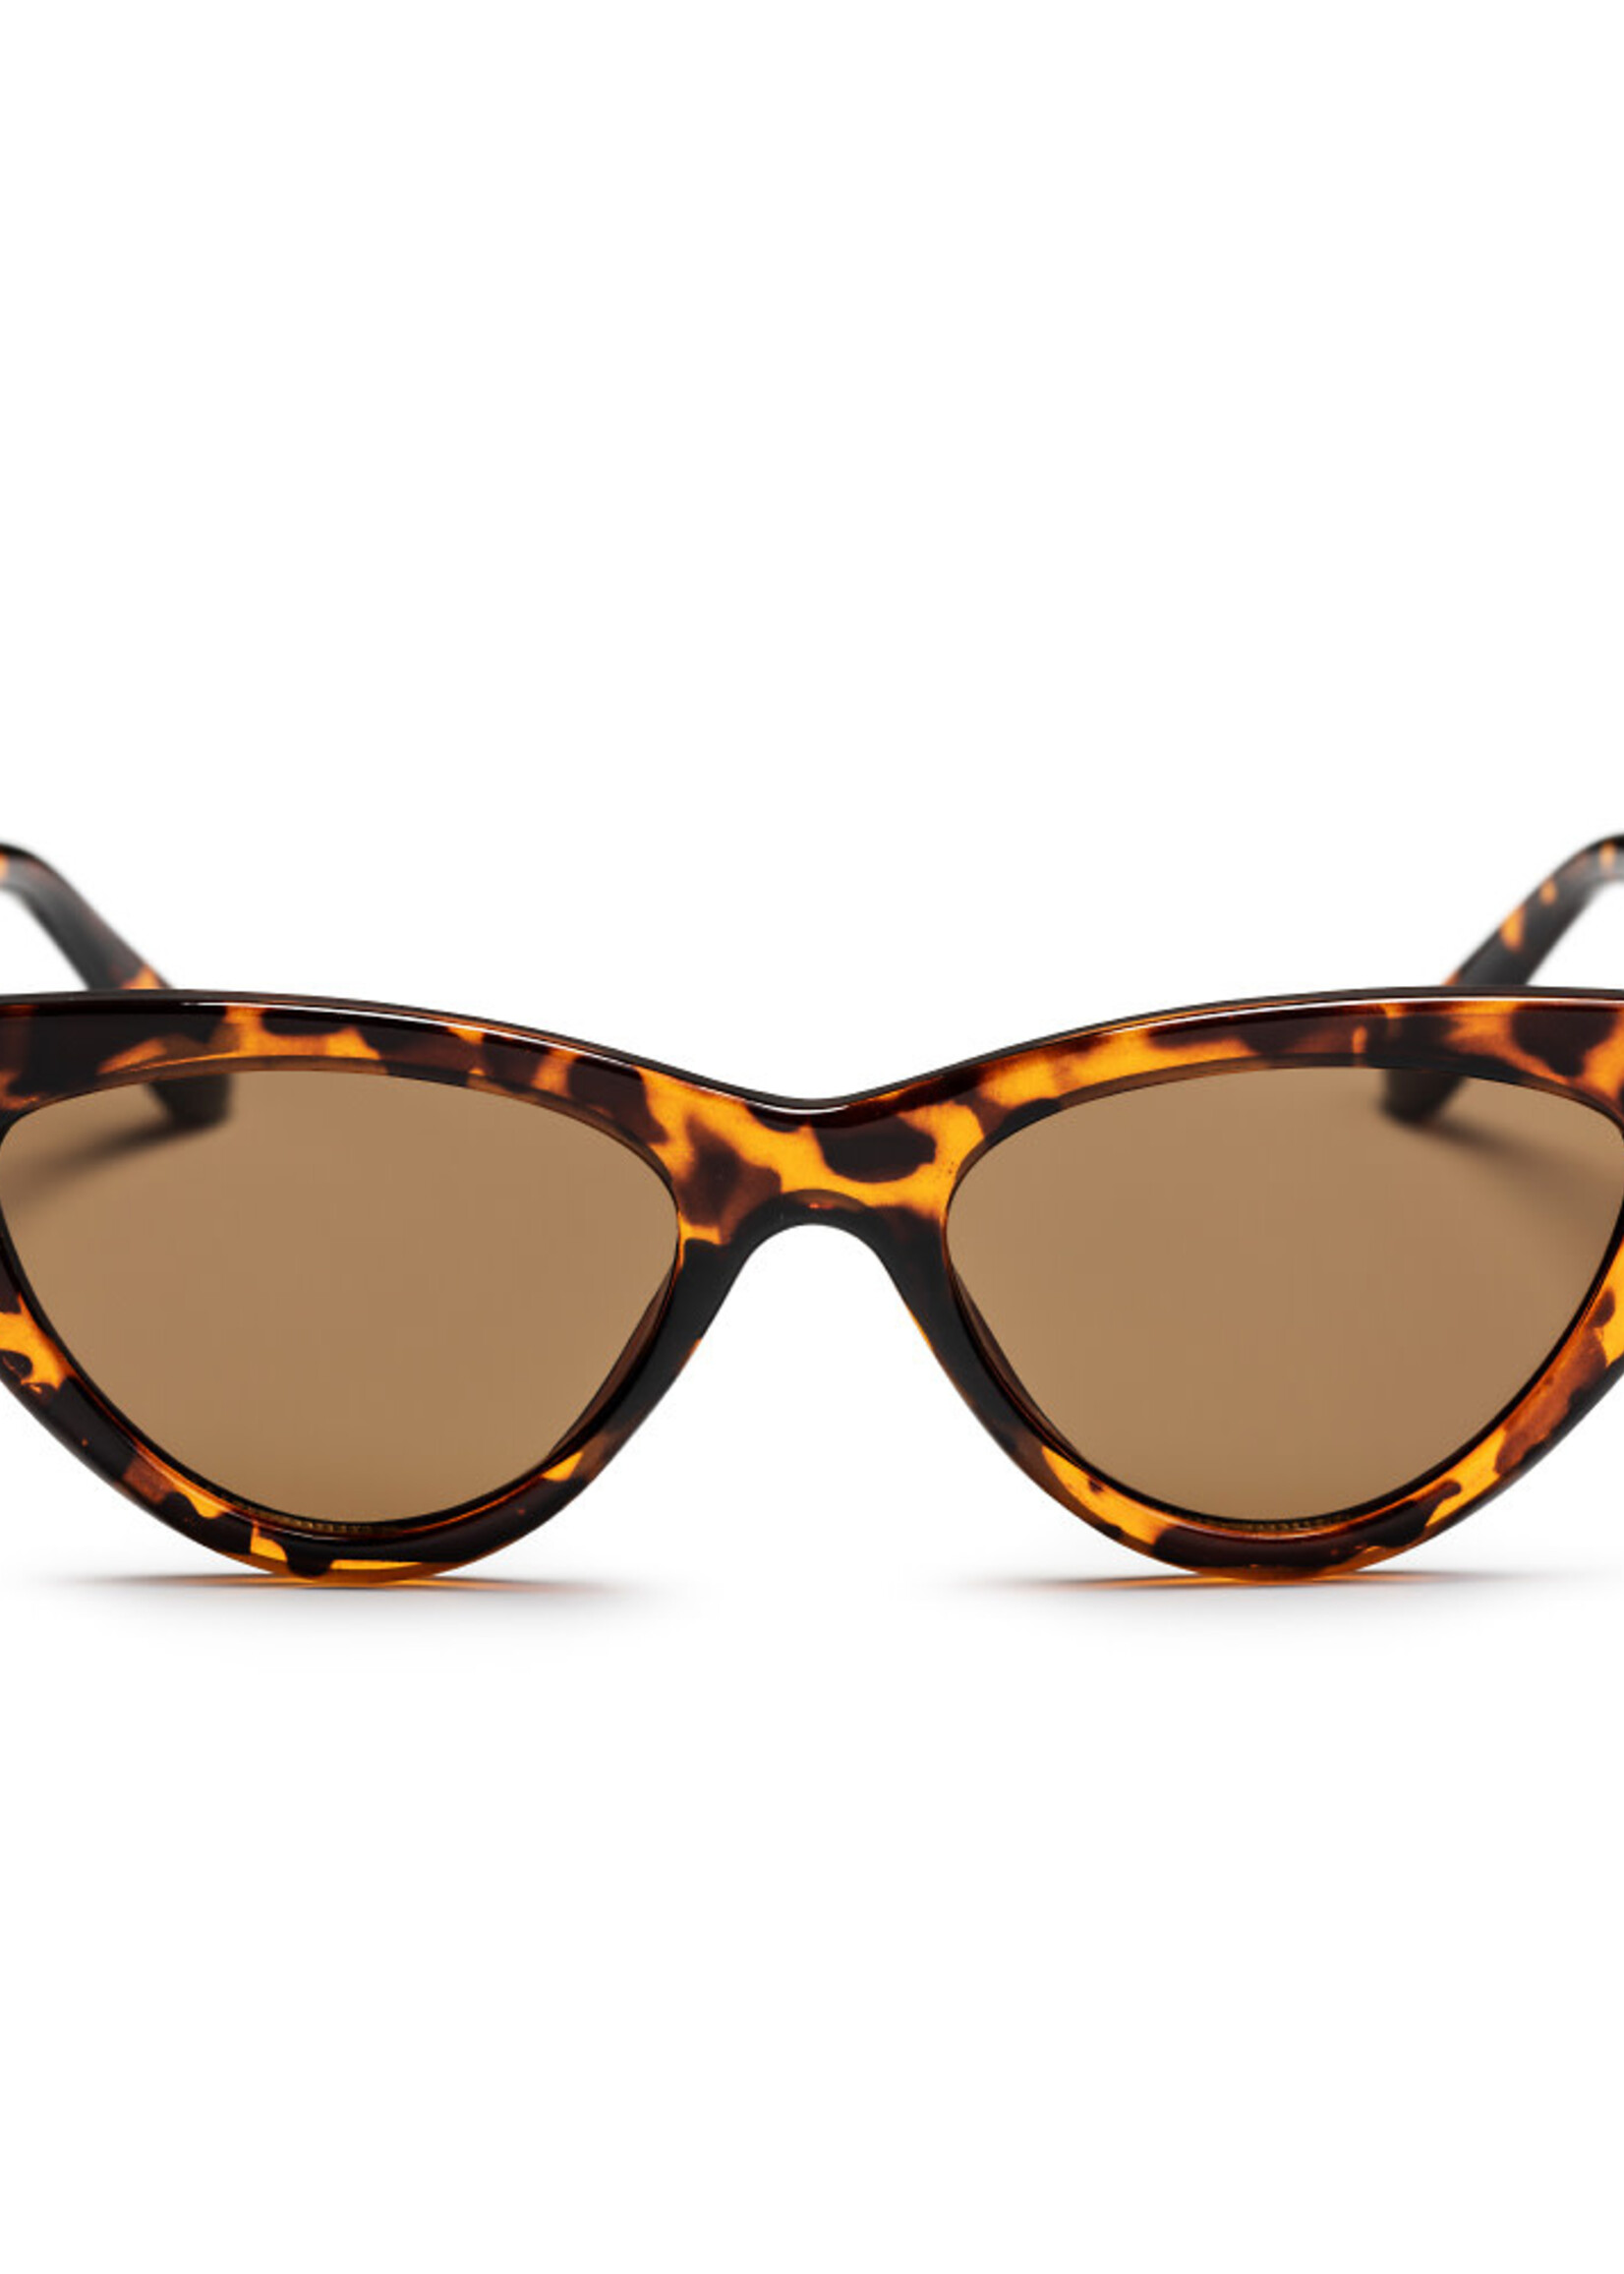 CHPO Brand Sunglasses Amy Turtle Brown